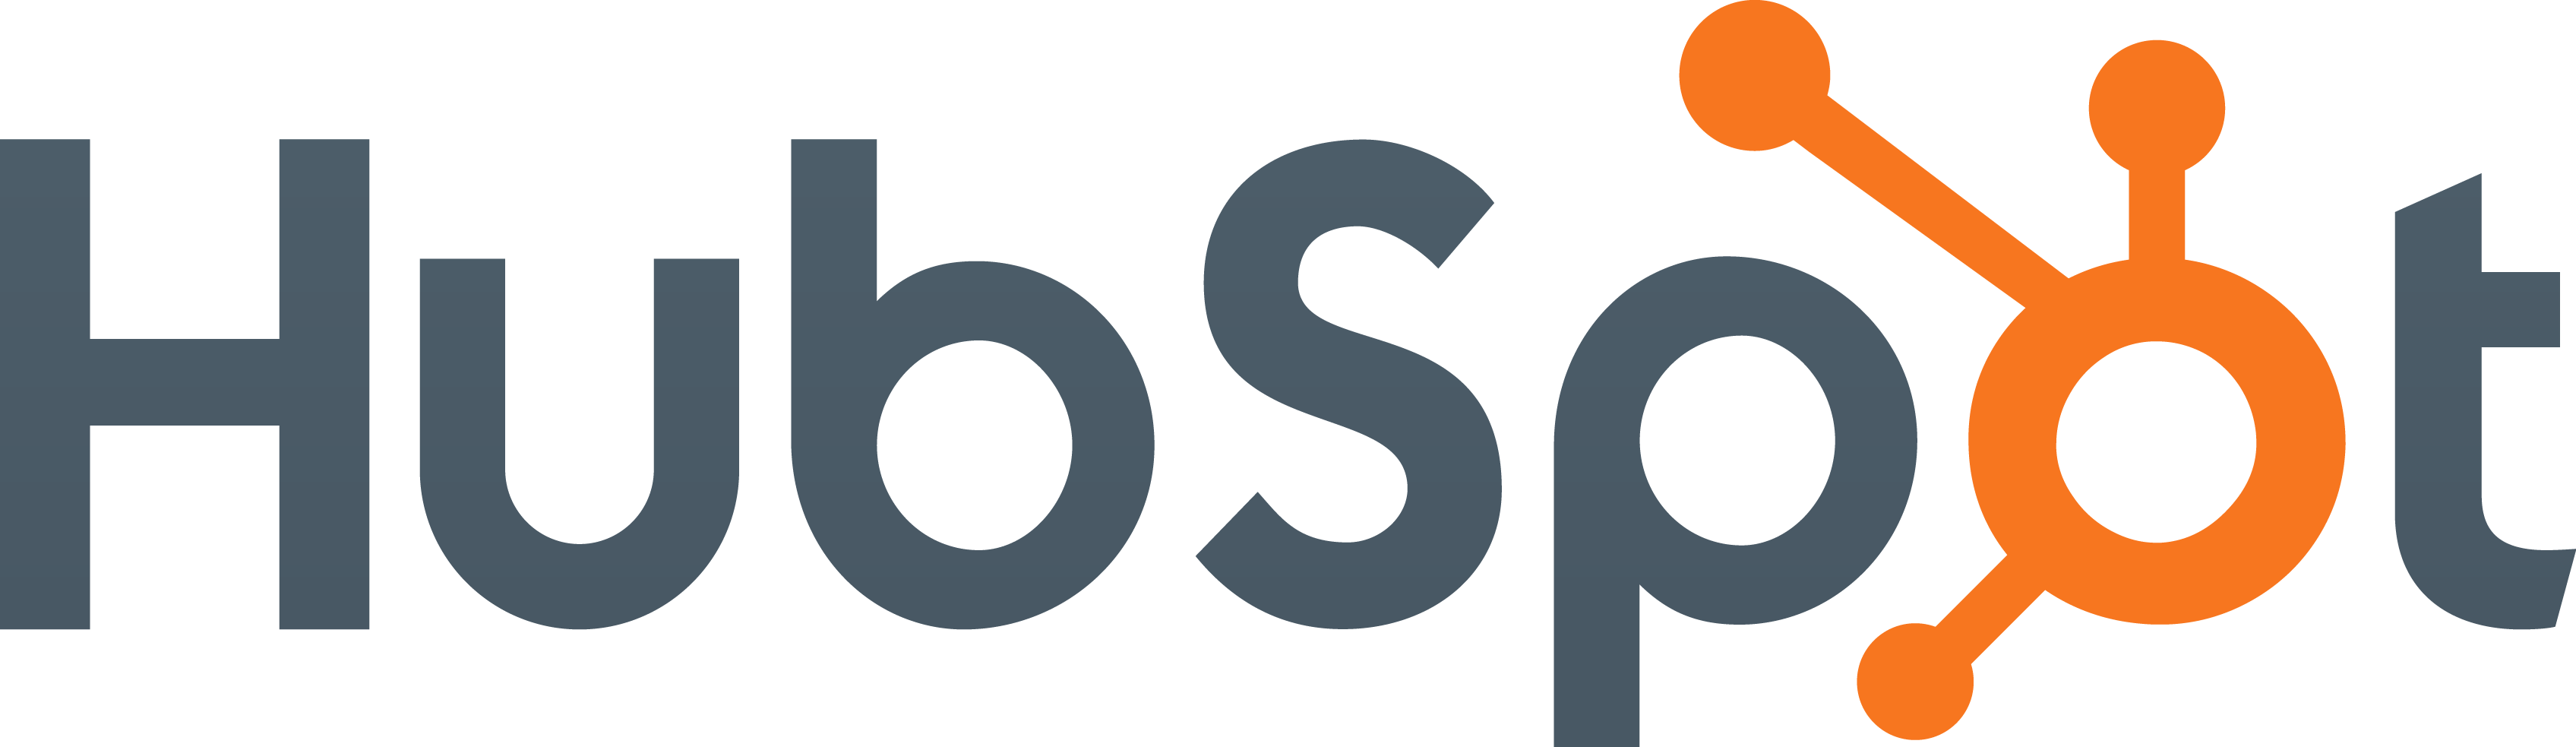 HubSpot_logo-14.png